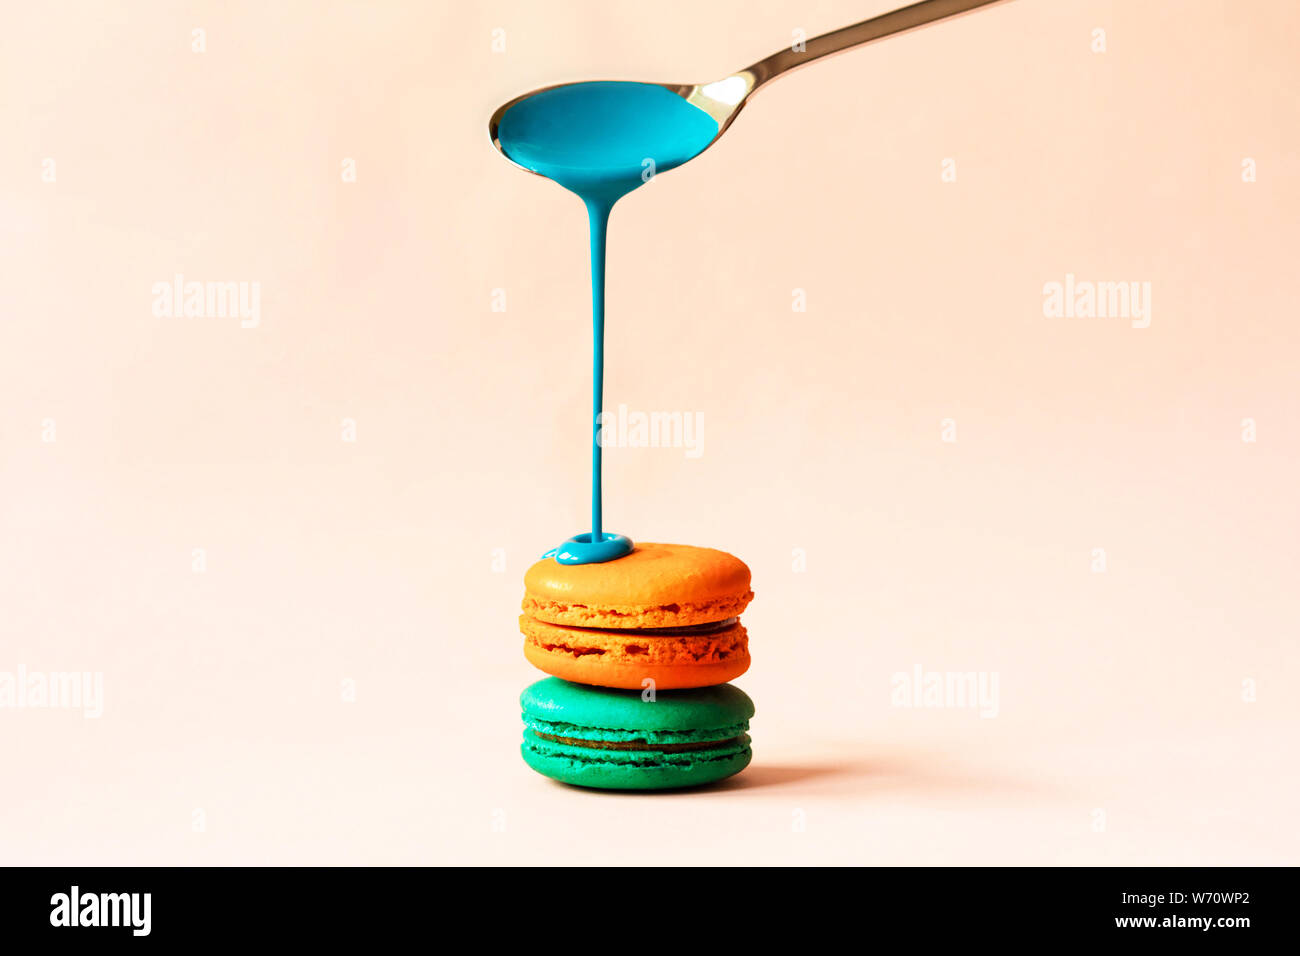 La vernice liquida fuoriuscite da un cucchiaio su un amaretto Foto Stock